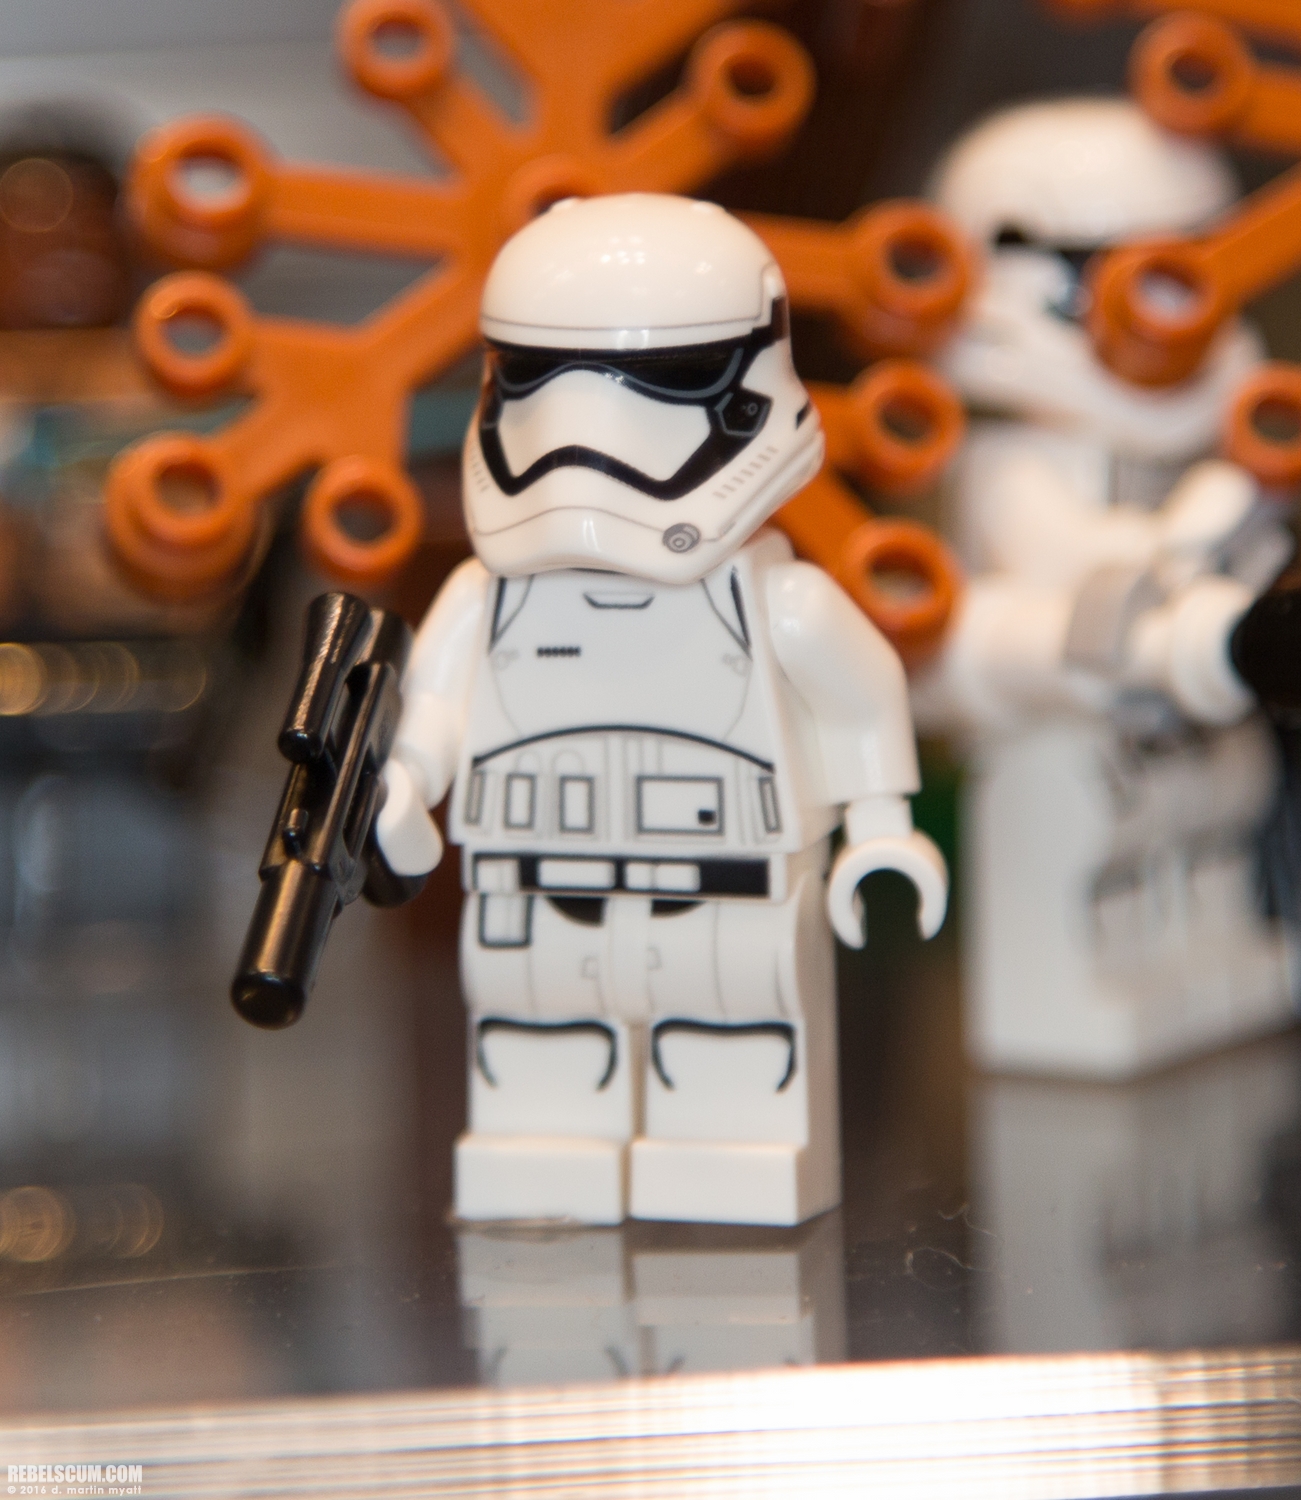 LEGO-2015-International-Toy-Fair-Star-Wars-025.jpg